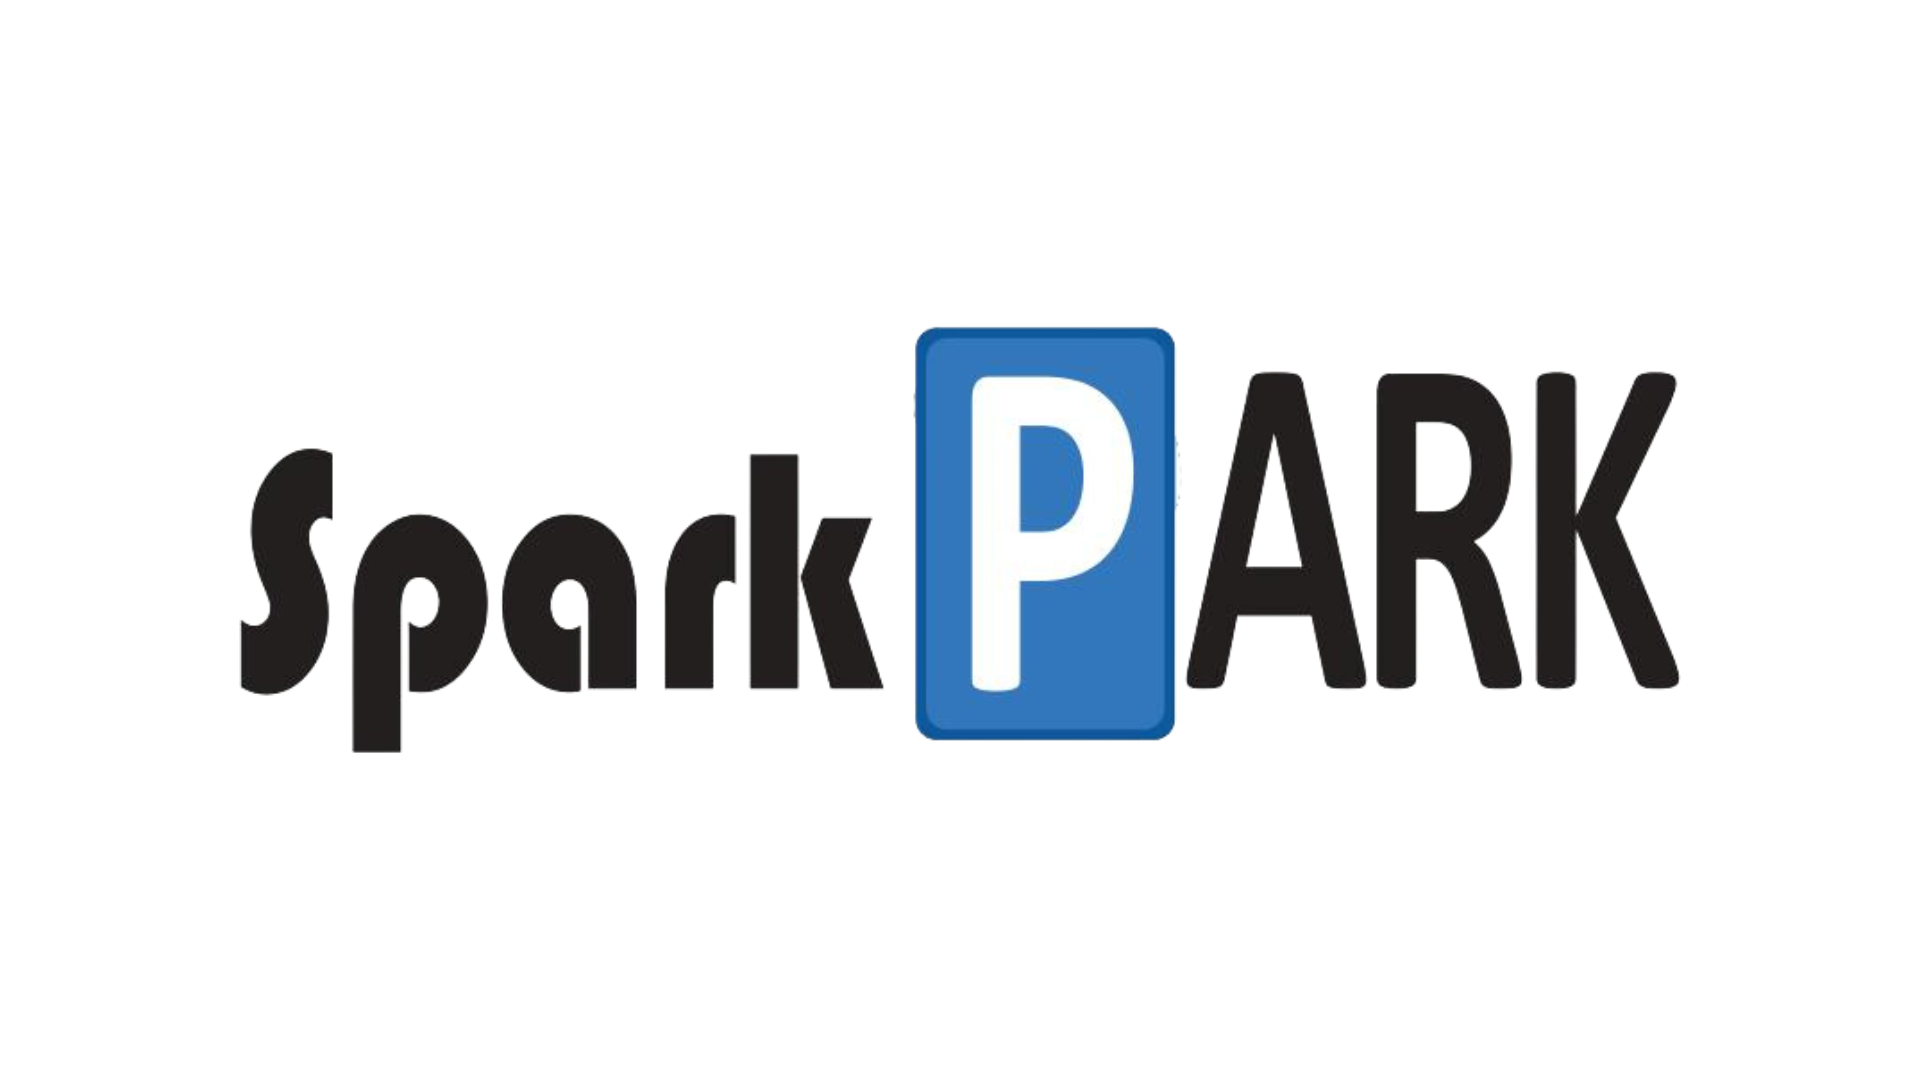 Sparkpark AS